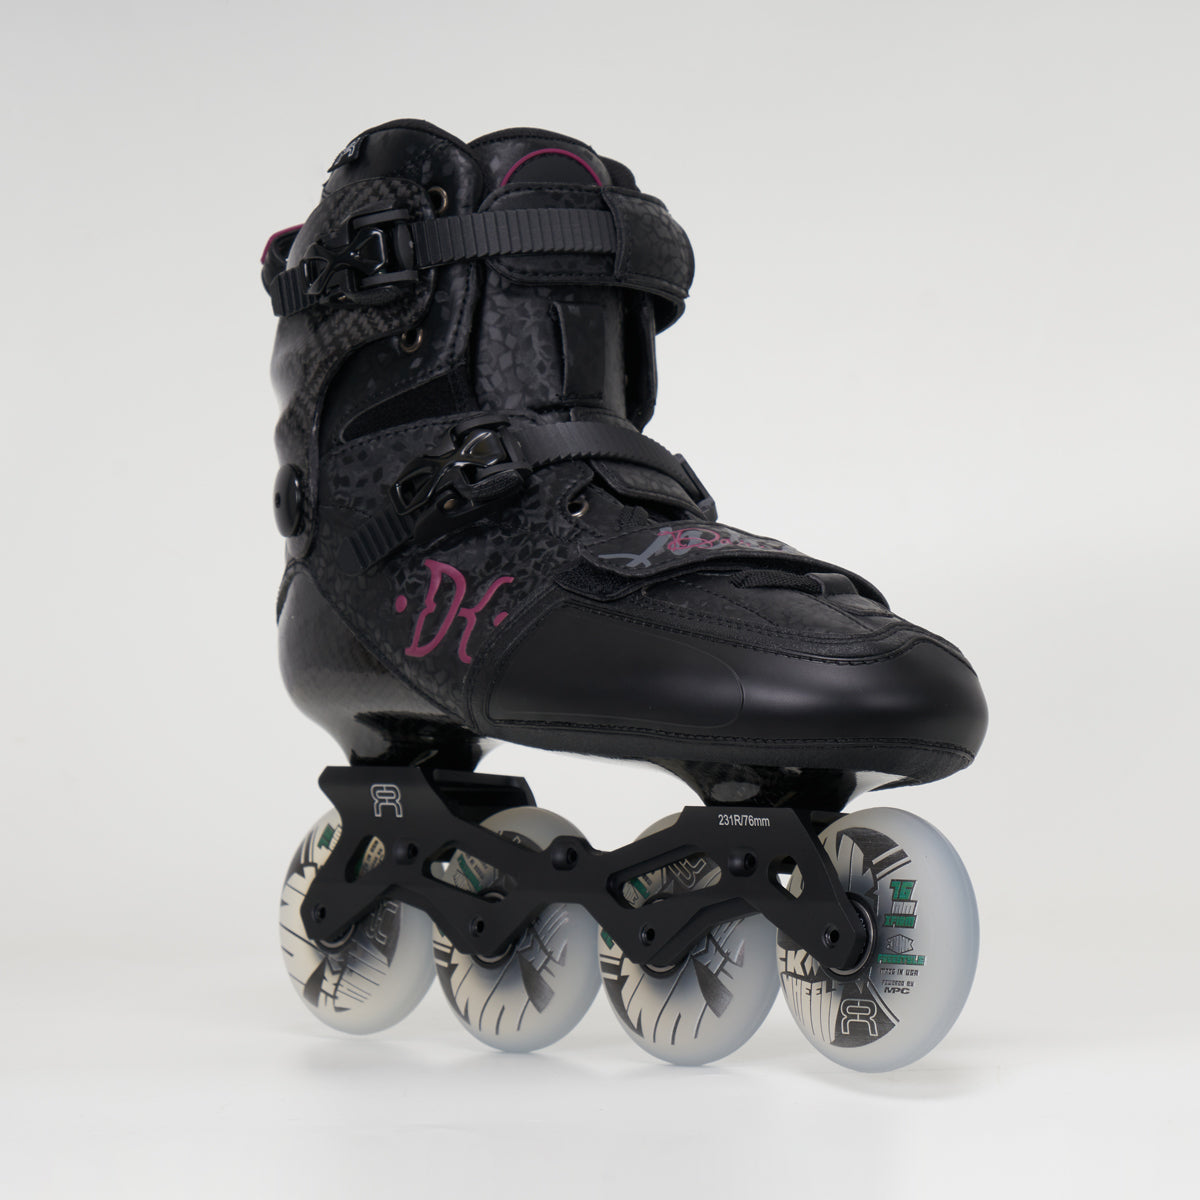 FR Skates Daria Pro Model - Black